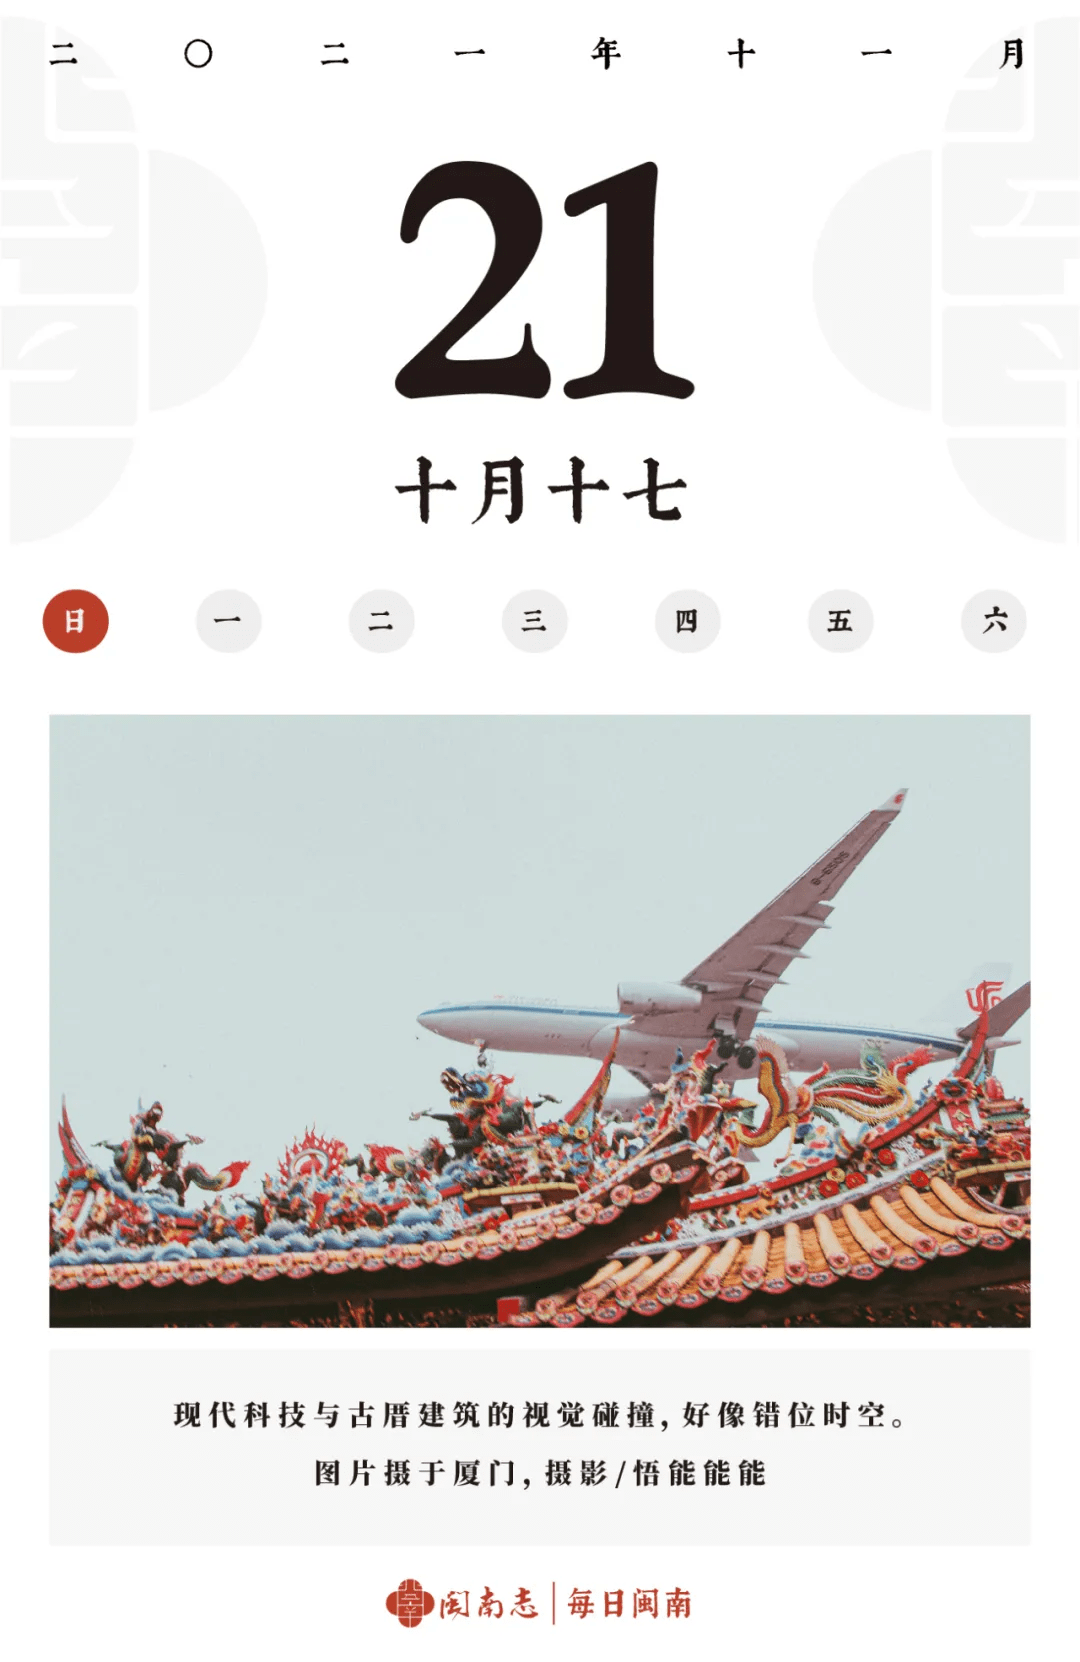 小陈 闽南志每日闽南 11.15~11.21集锦